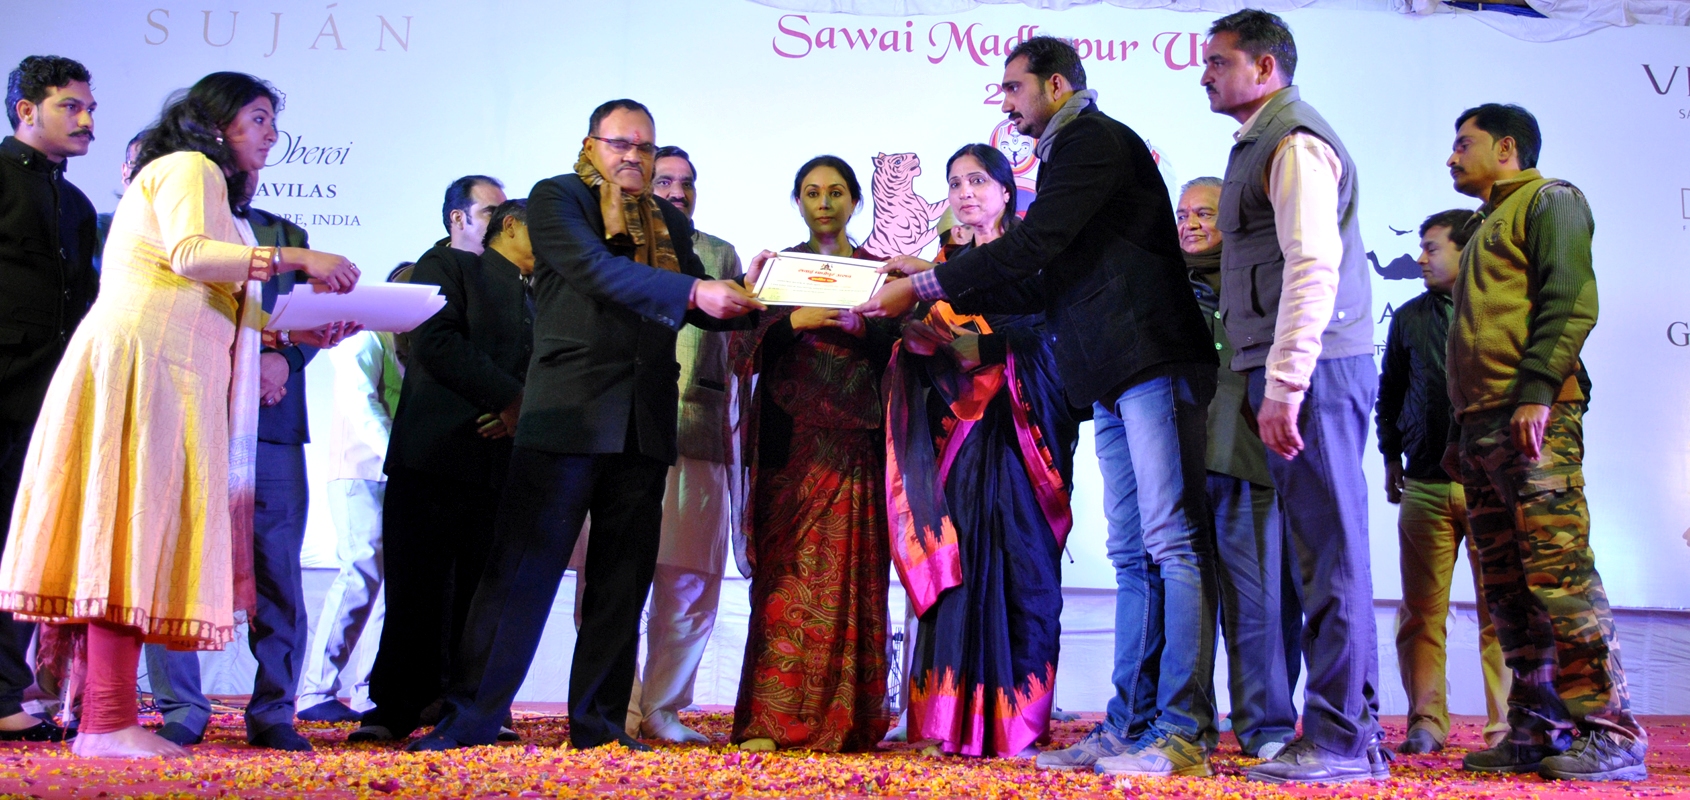  Sawai Madhopur Utsav 2017